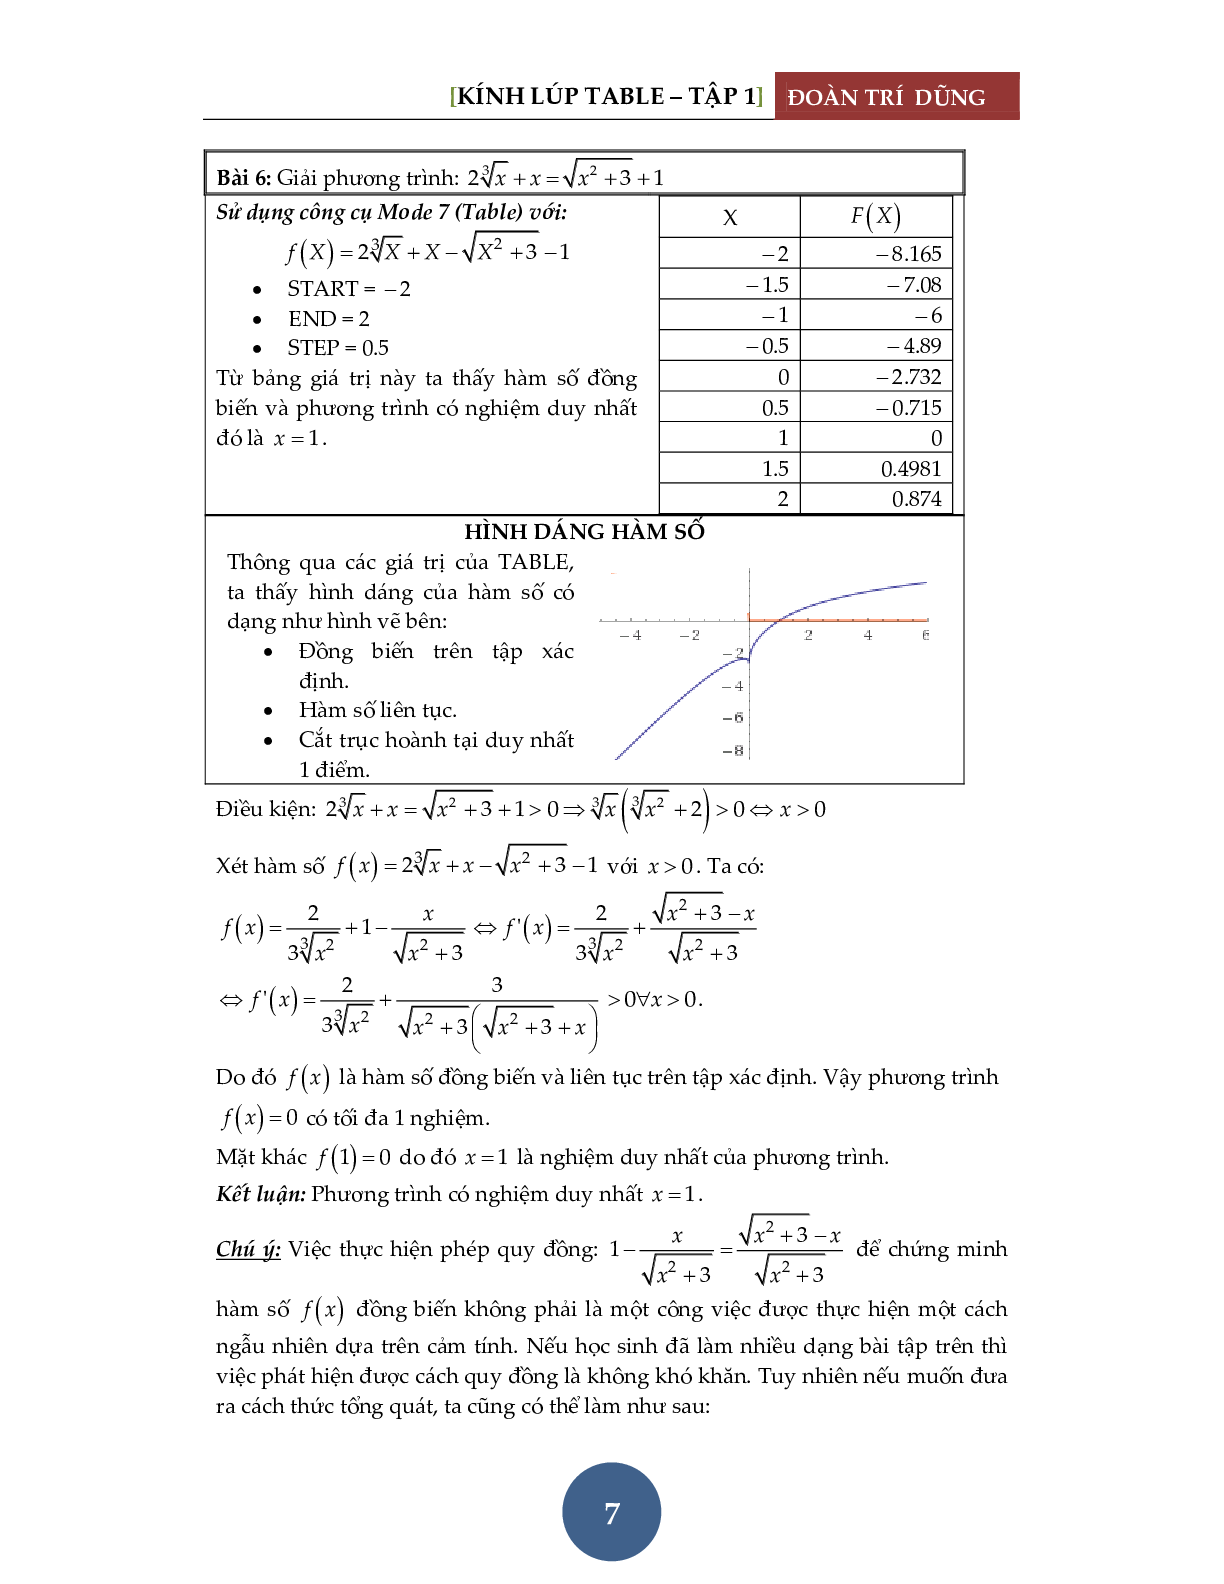 Giải phương trình bằng máy tính Casio – Tập 1: Đánh giá hàm đơn điệu (trang 8)